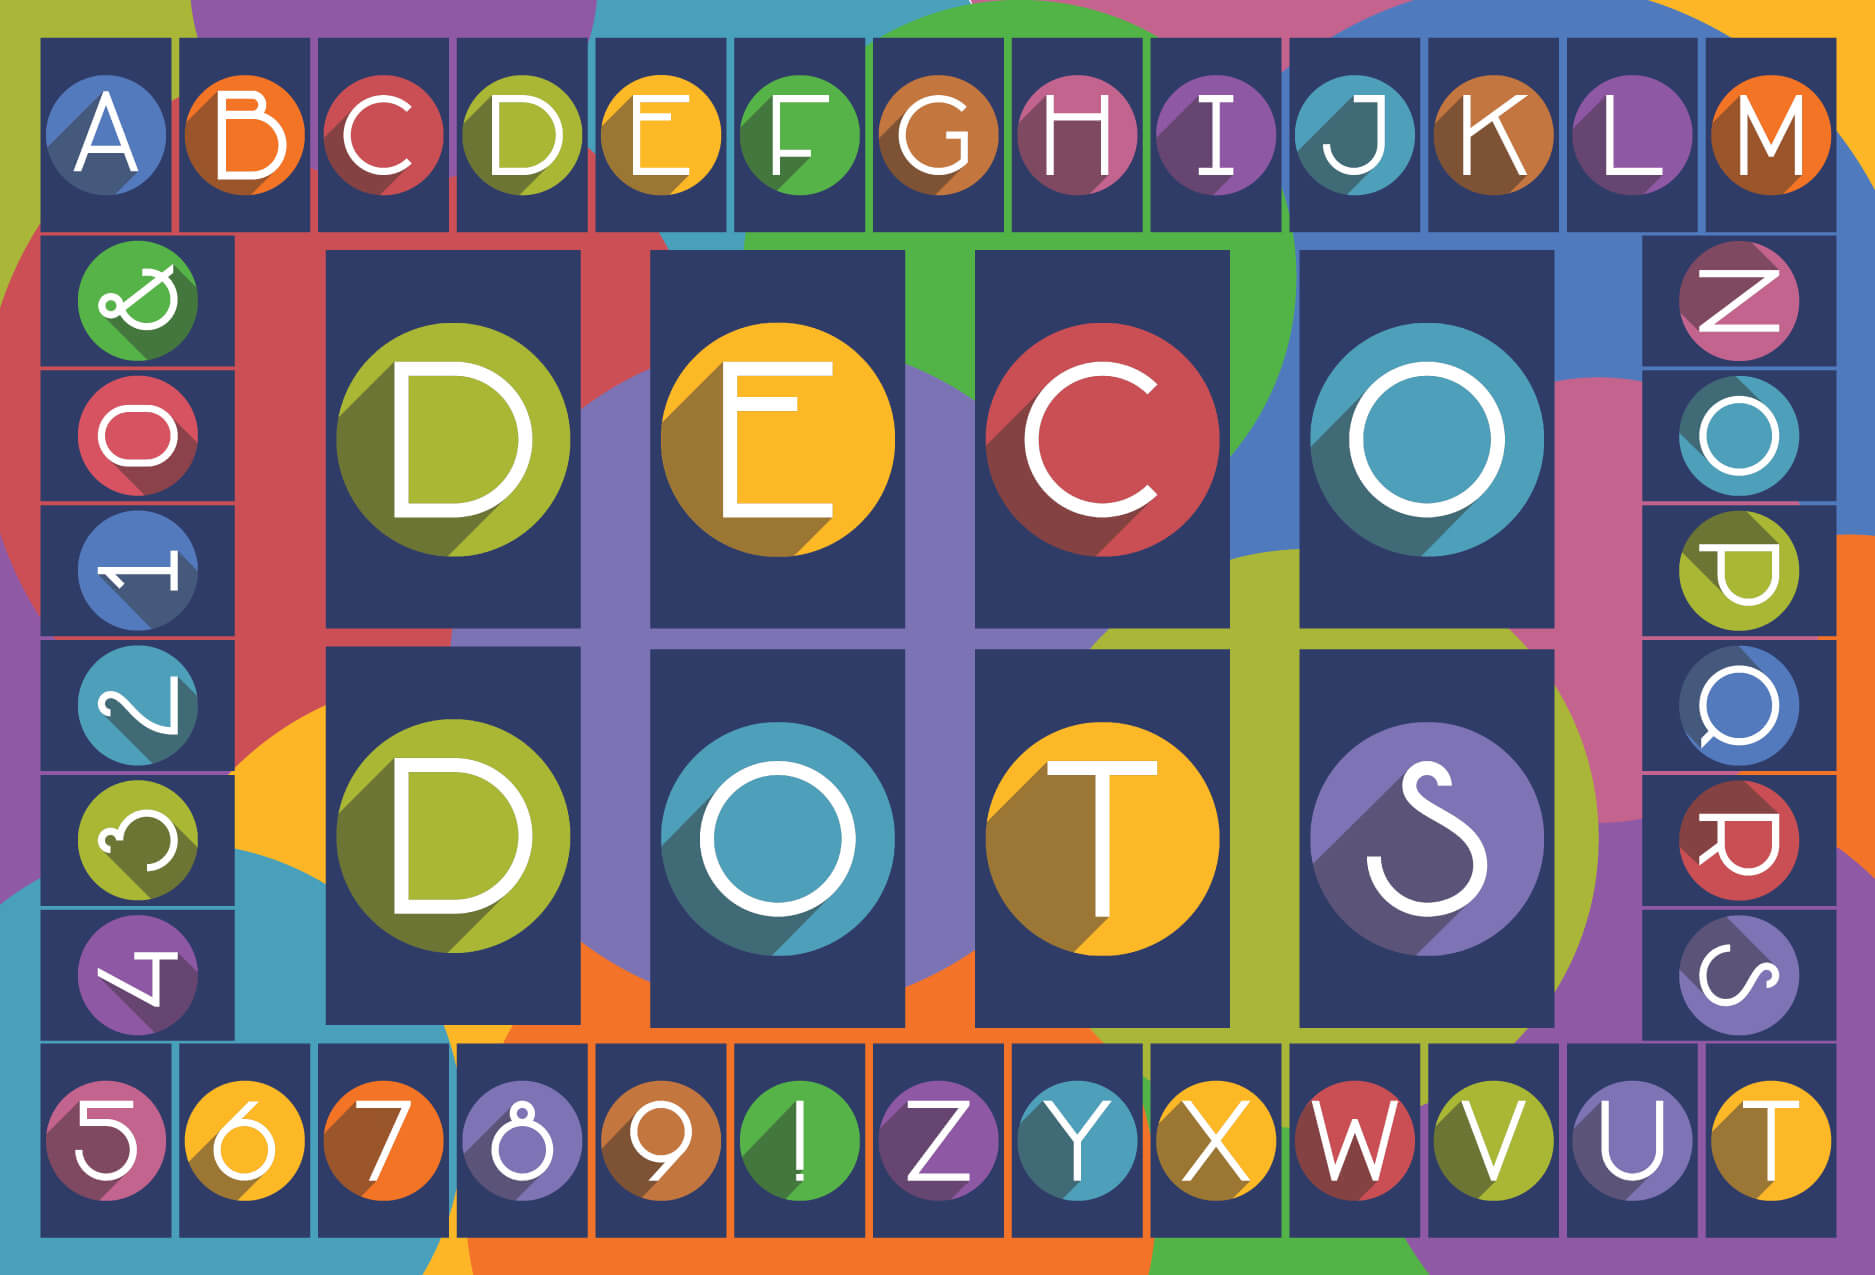 Happy Birthday! - Deco Dots